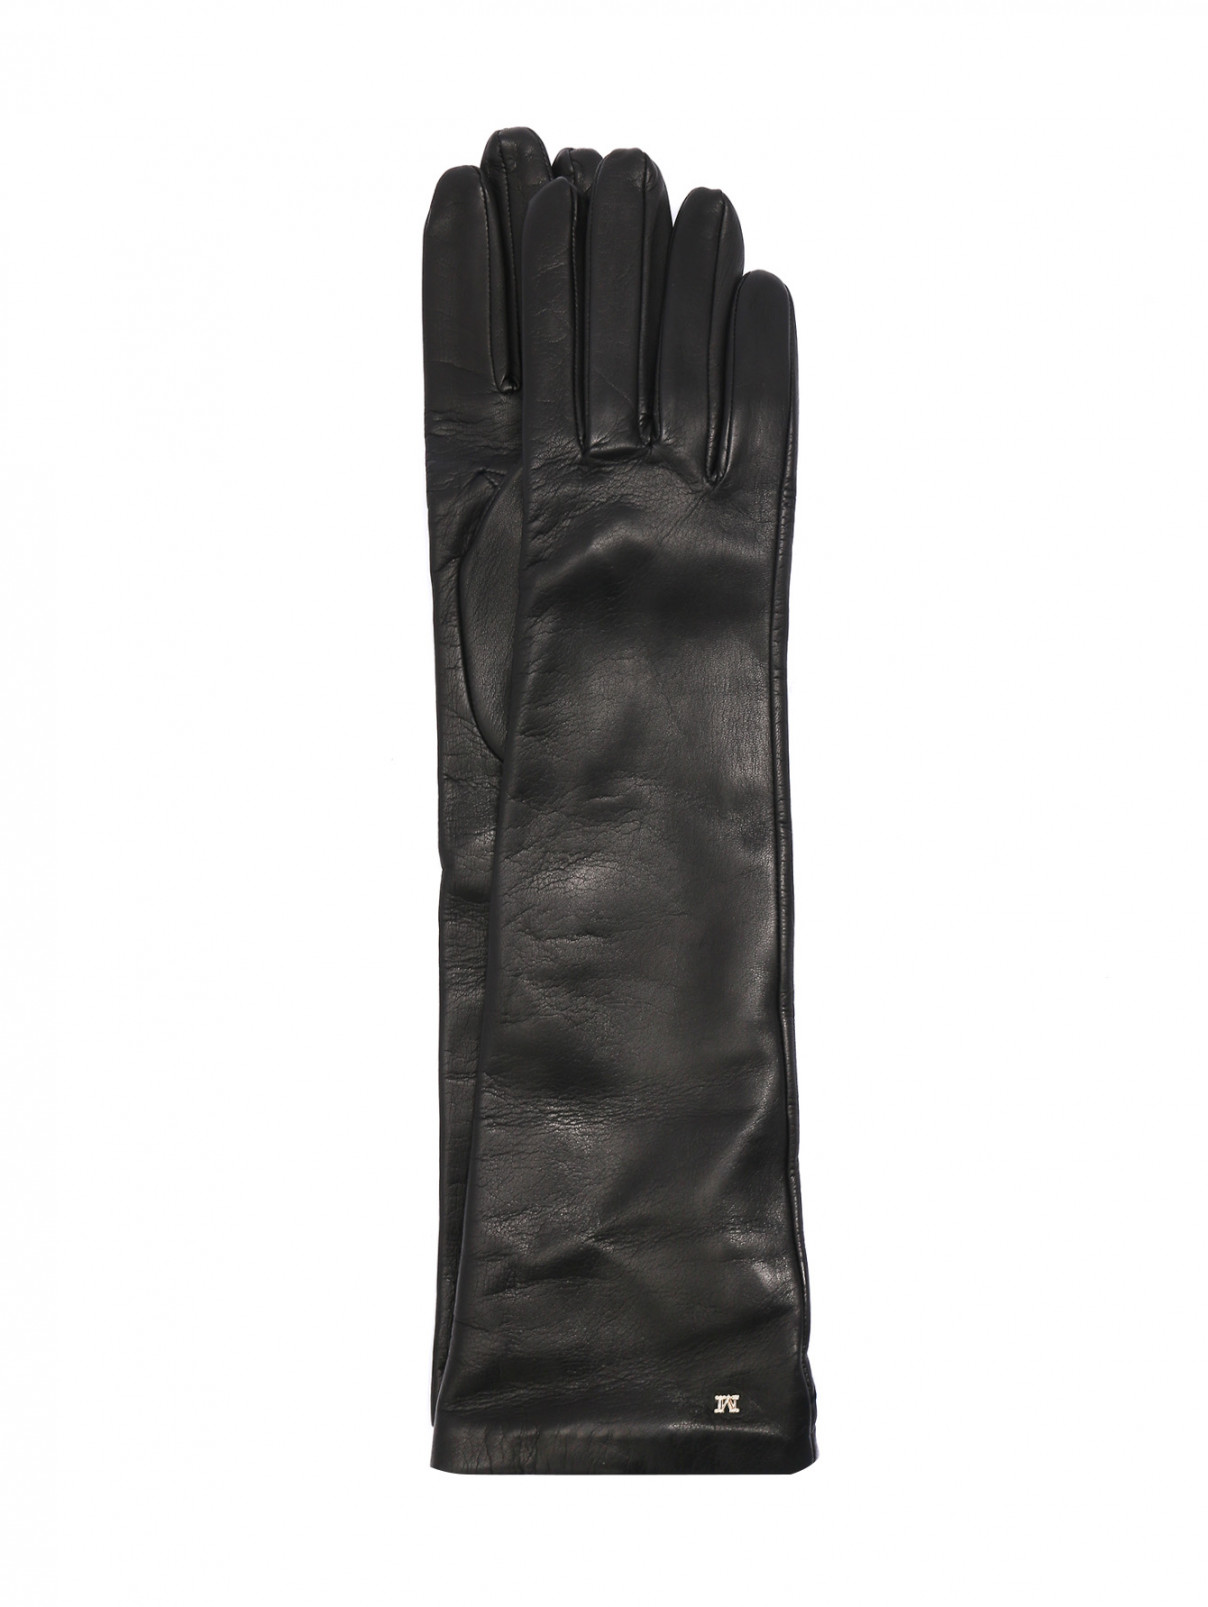 Высокие перчатки из кожи Max Mara  –  Общий вид  – Цвет:  Черный